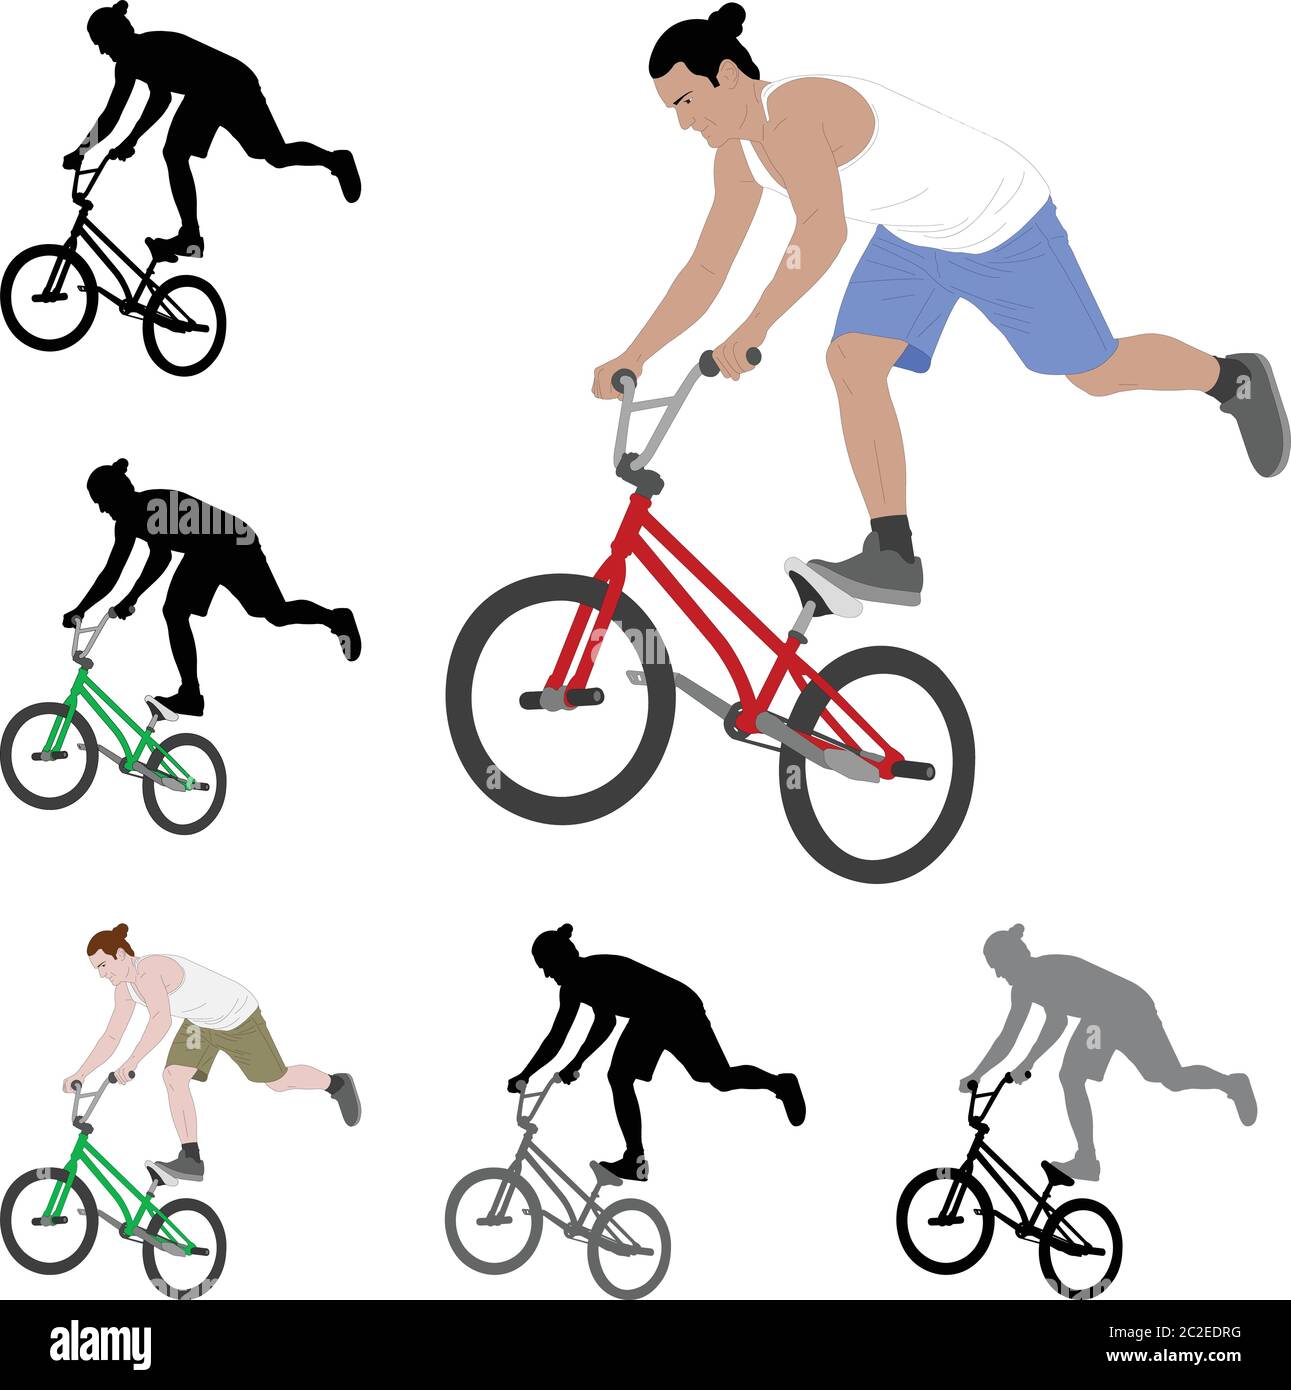 bmx stunt biciclist silueta y color ilustración - vector Ilustración del Vector